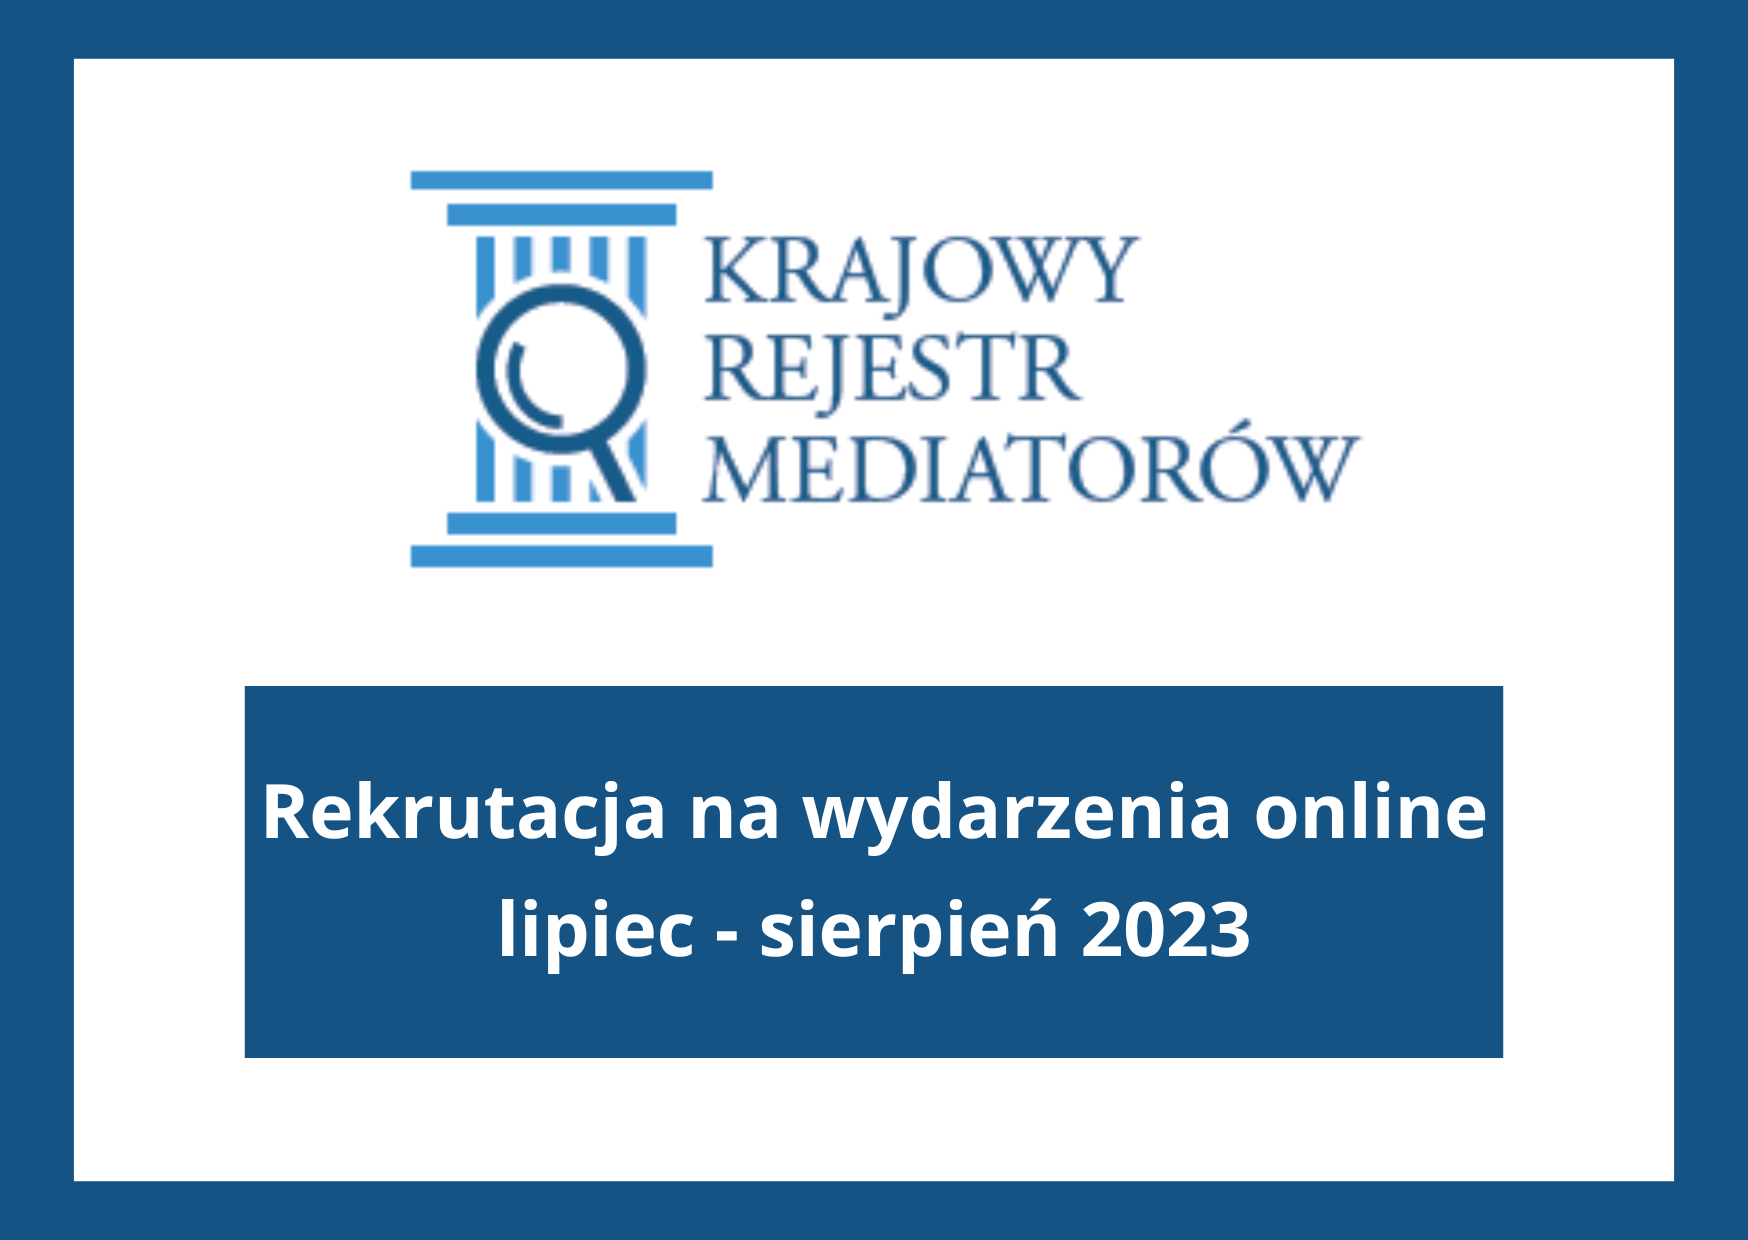 Rekrutacja na wydarzenia online lipiec - sierpień 2023